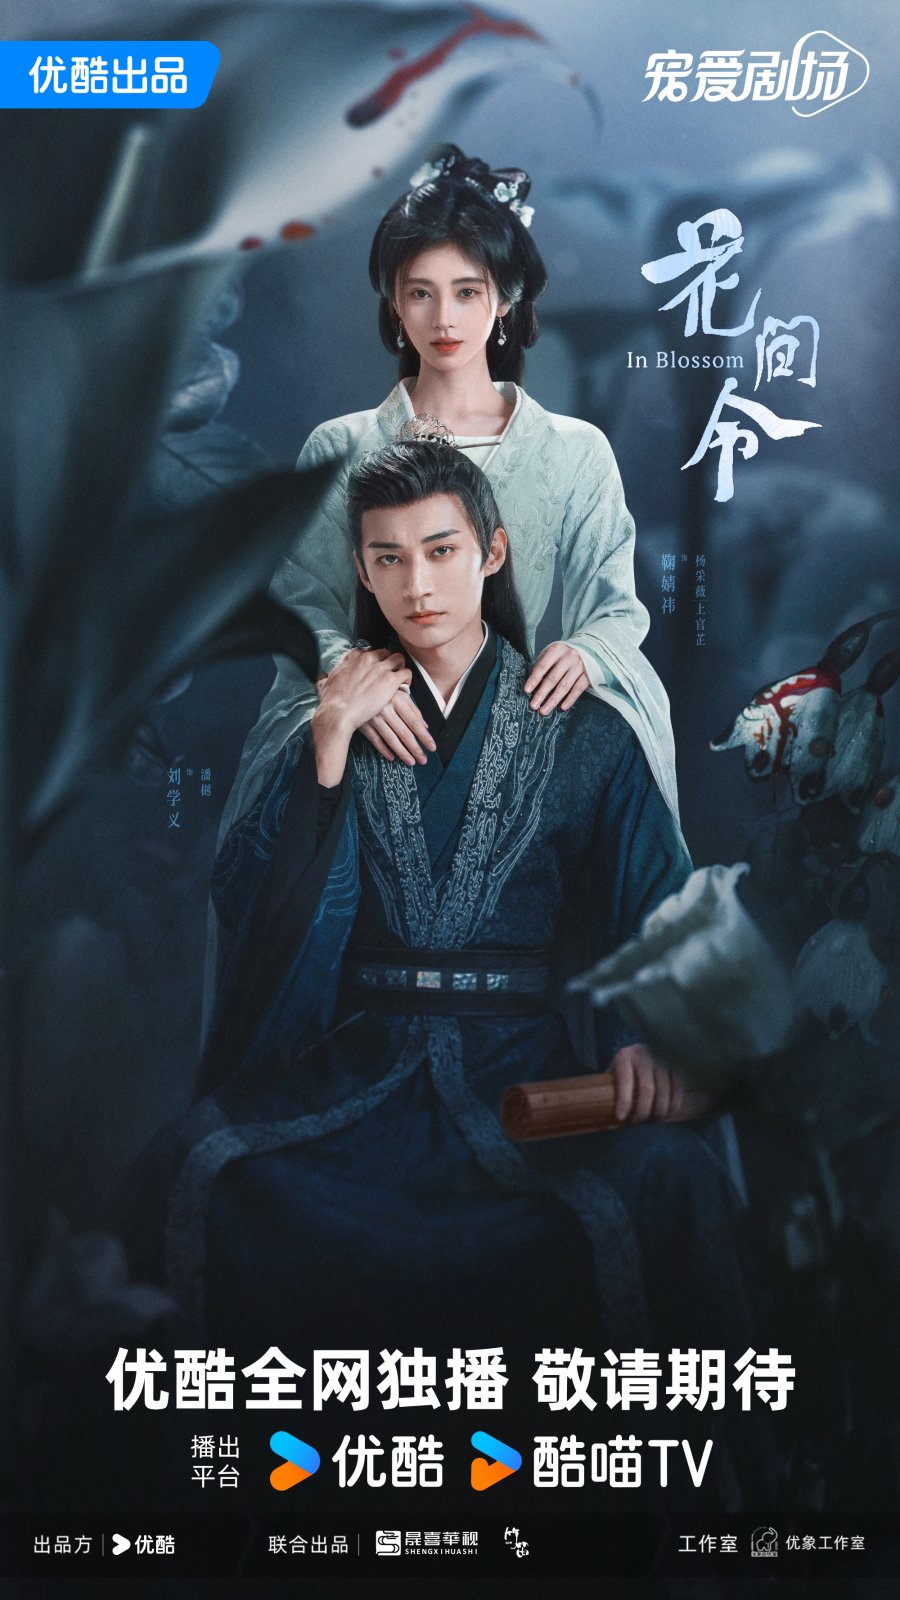 Phim mới nhất của Lưu Học Nghĩa: Hoa gian lệnh – In blossom (2024)